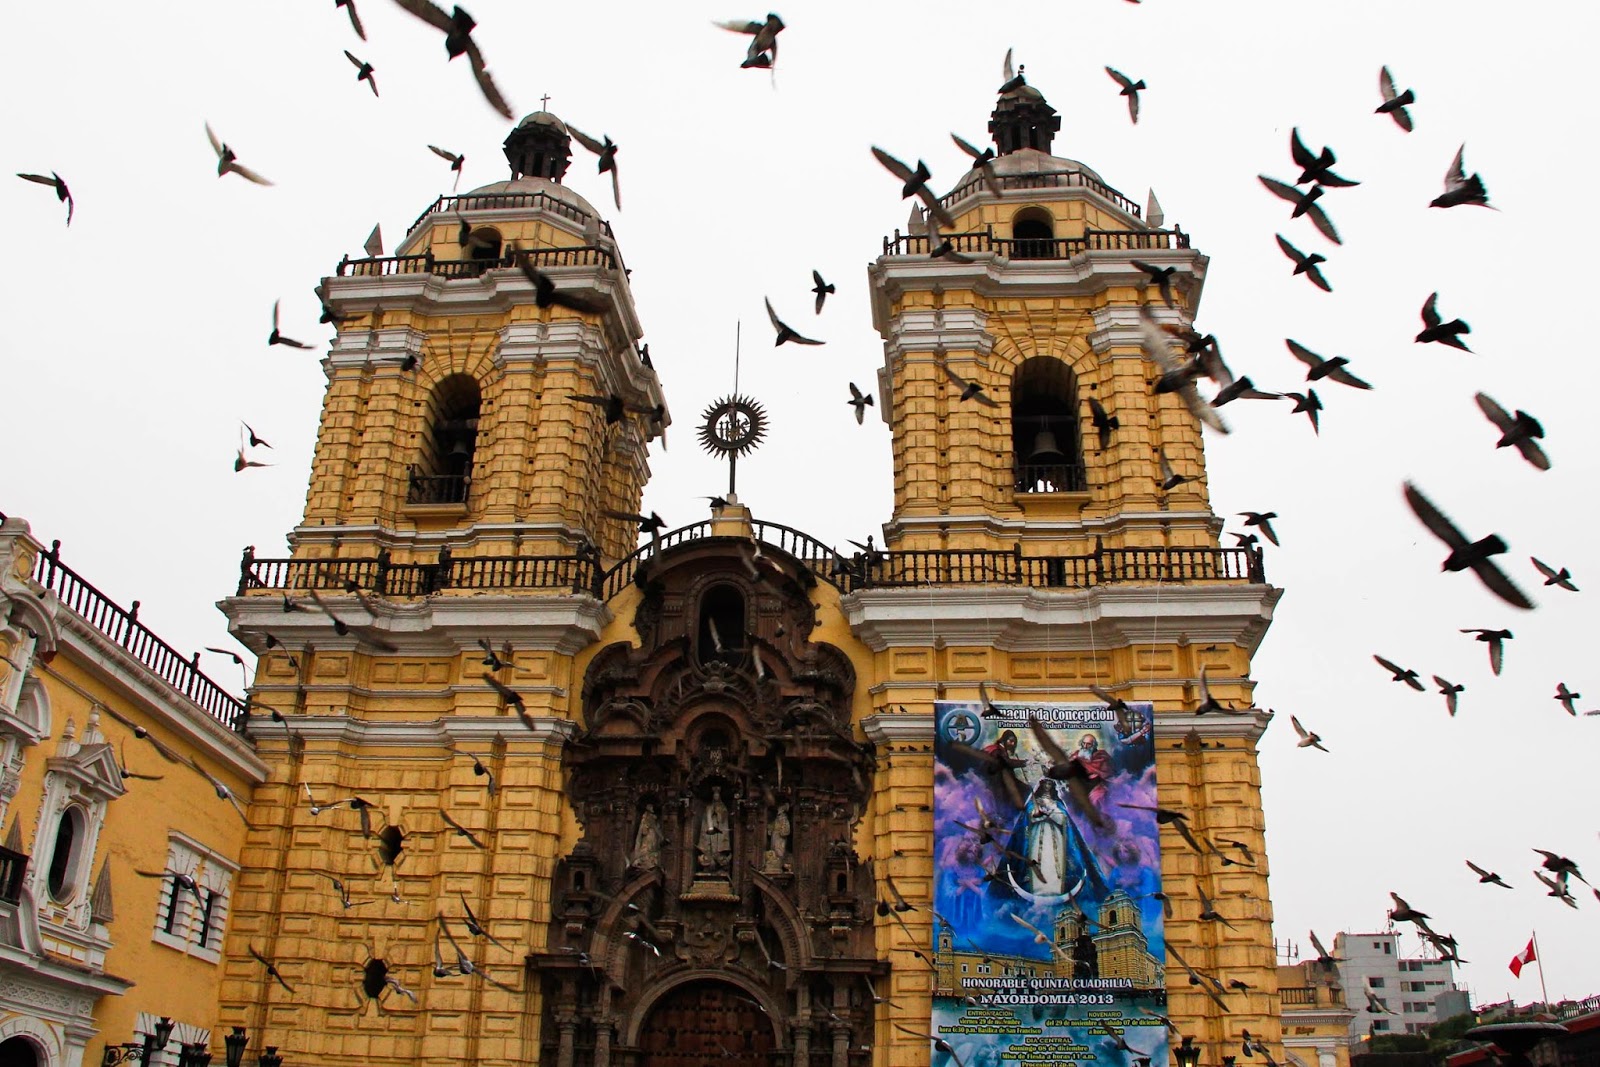 Alma De Viaje Lima Peru En 3 Dias